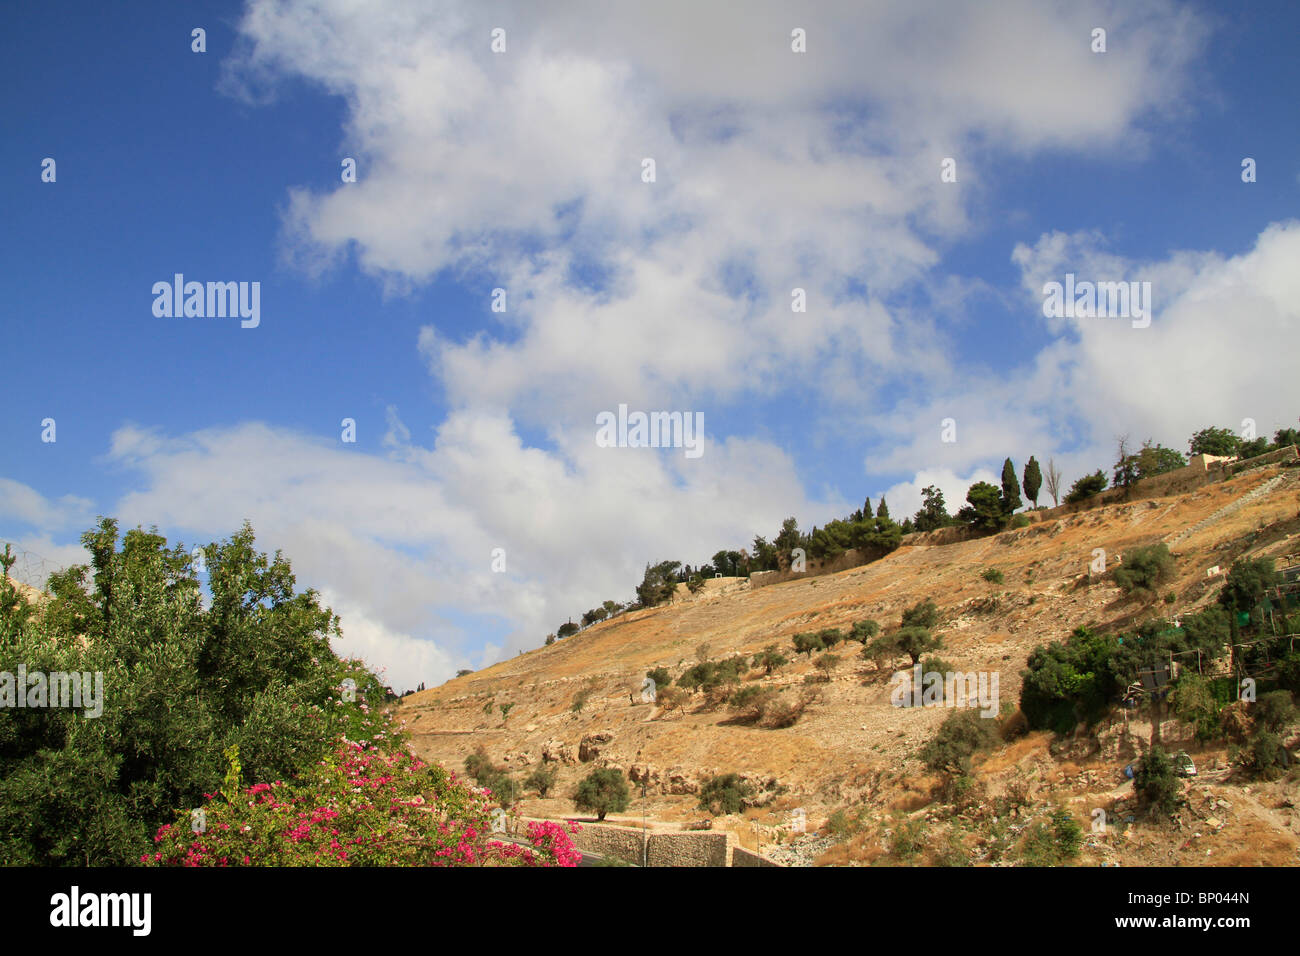 Israël, Jérusalem, une vue de la vallée de Hinnom du monastère grec orthodoxe saint Onuphrius Banque D'Images